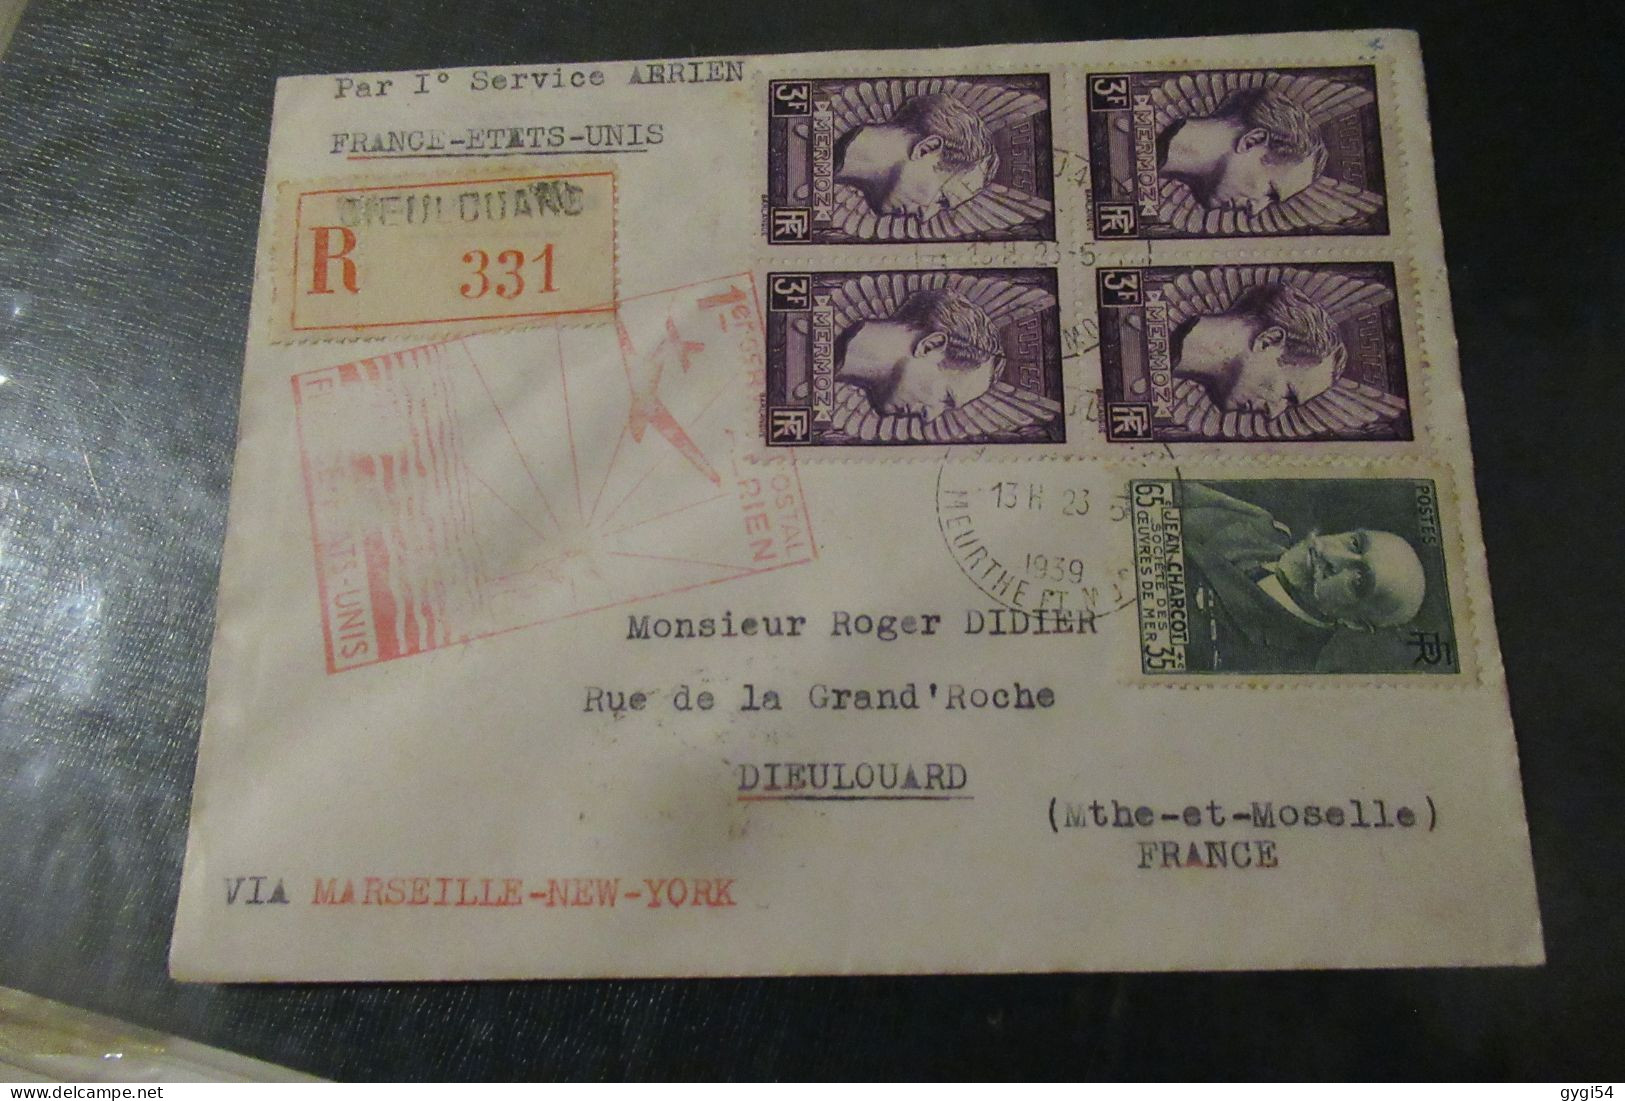 Par Premier Service Aérien France Etats - Unis 1939 Lettre R Dieulouard - Premiers Vols